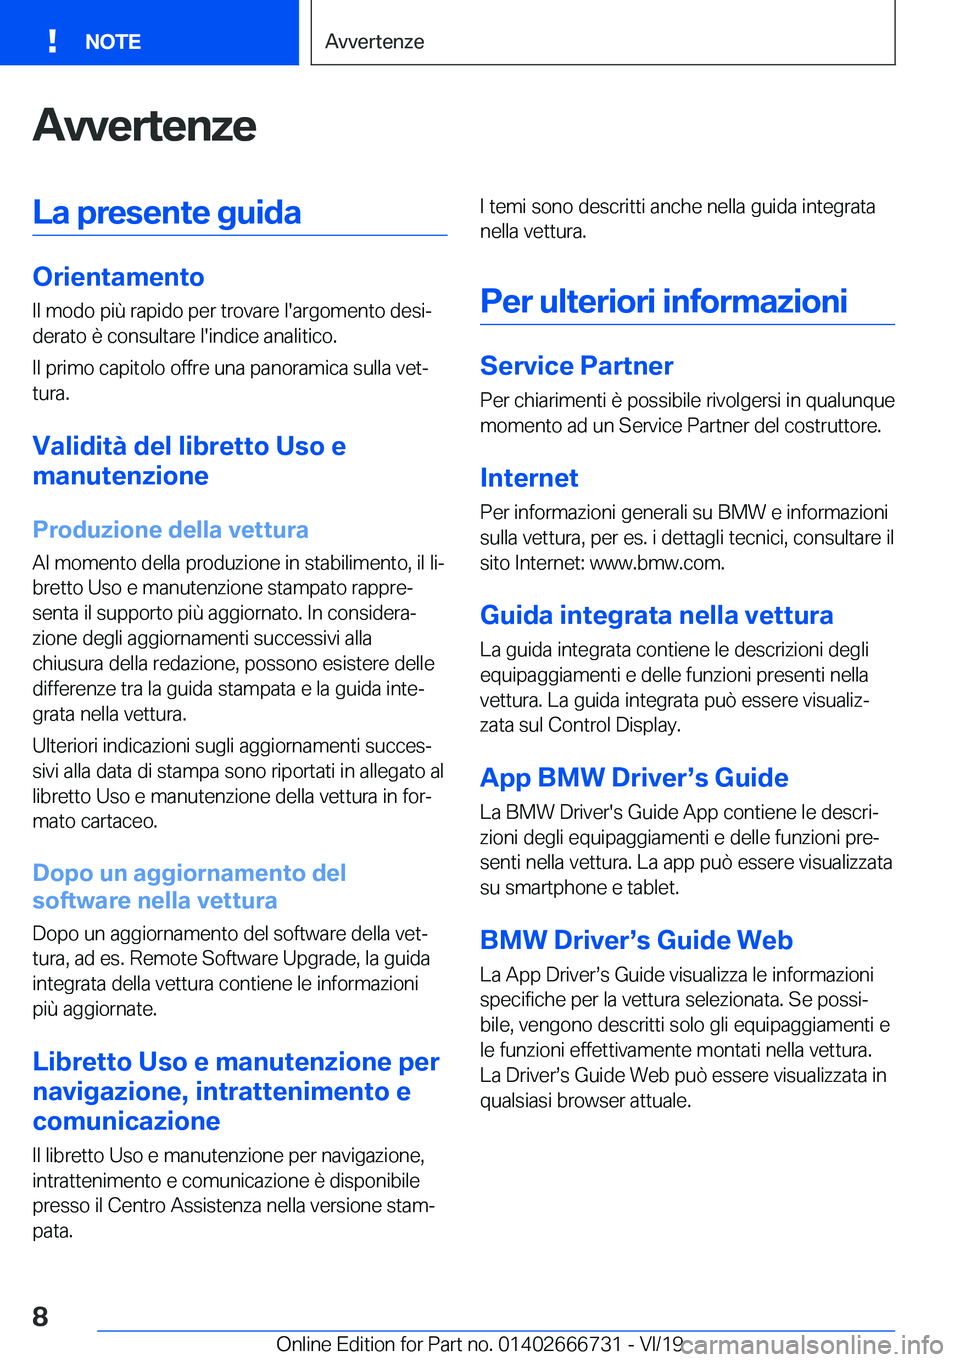 BMW M5 2020  Libretti Di Uso E manutenzione (in Italian) �A�v�v�e�r�t�e�n�z�e�L�a��p�r�e�s�e�n�t�e��g�u�i�d�a
�O�r�i�e�n�t�a�m�e�n�t�o�I�l��m�o�d�o��p�i�